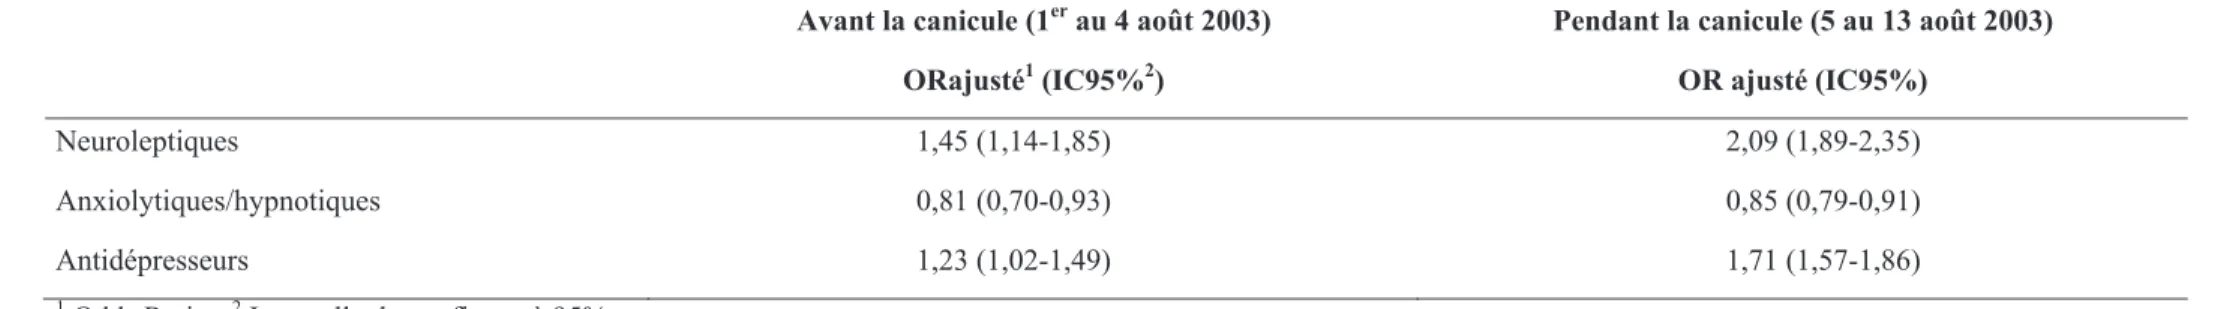 Tableau  5.  Analyses  multivariées  explorant  les  classes  thérapeutiques  de  psychotropes  indépendamment  associées  au  décès,  avant  et  pendant la canicule d’août 2003